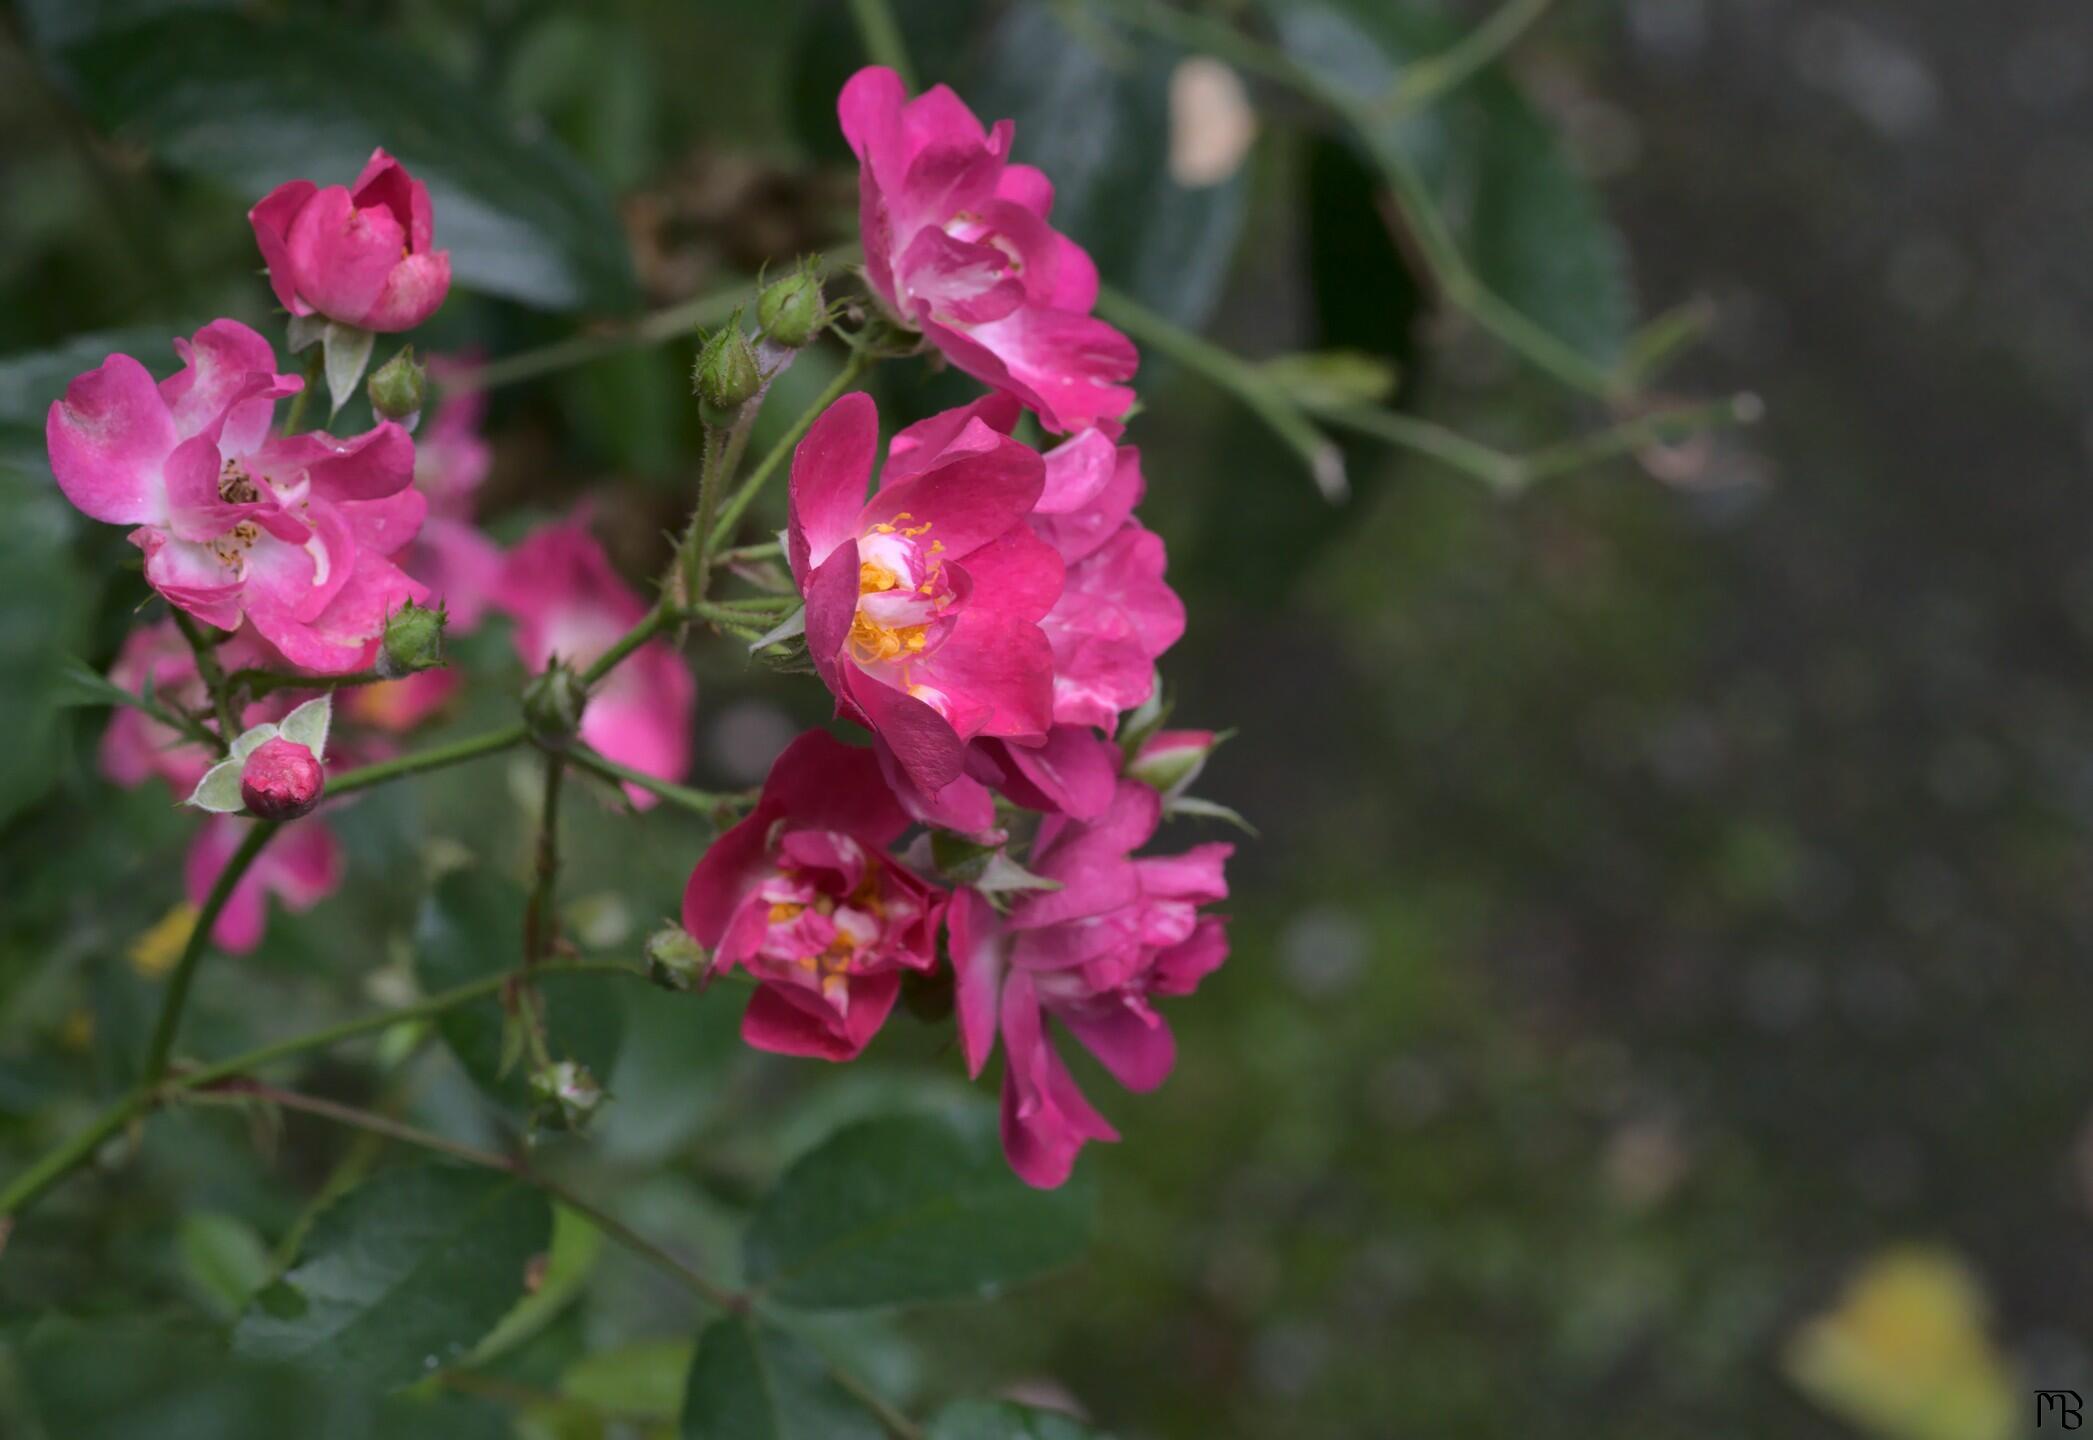 Pink flowers in bush